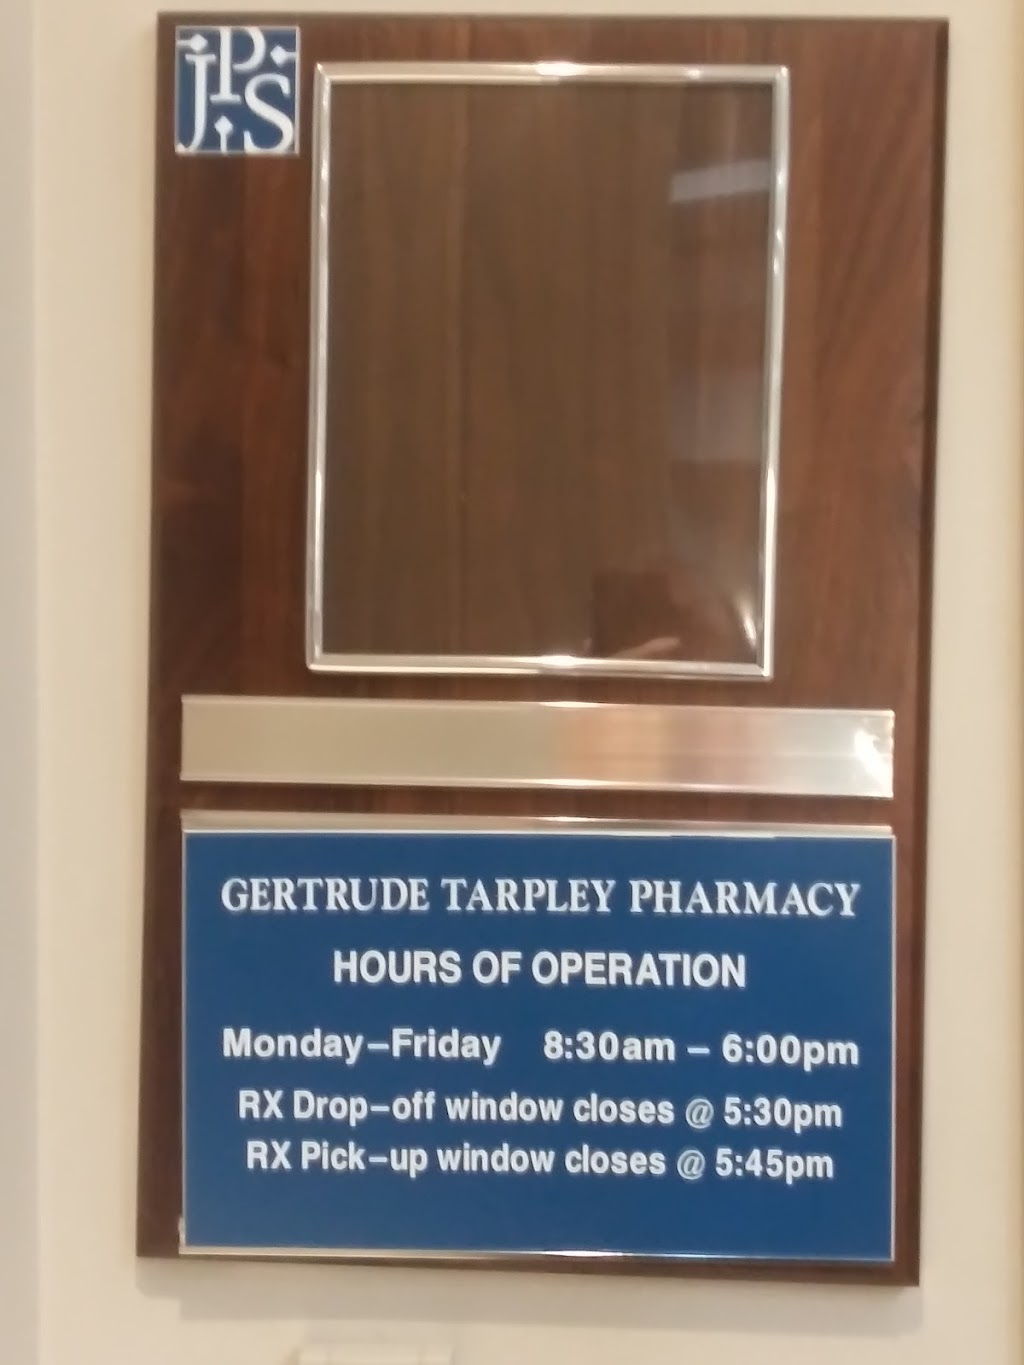 Gertrude Tarpley JPS Health Center at Watauga | 6601 Watauga Rd #124, Watauga, TX 76148, USA | Phone: (817) 702-1100